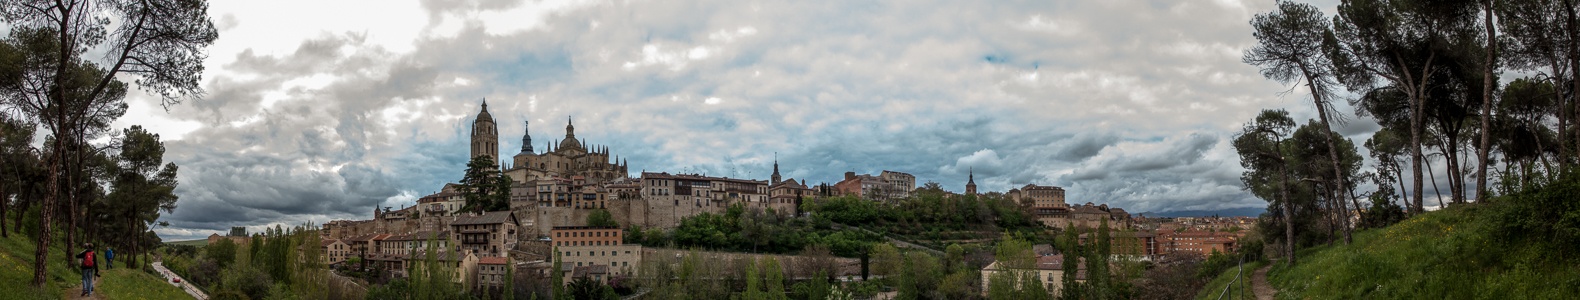 Centro Histórico mit der Catedral de Santa María de Segovia Segovia